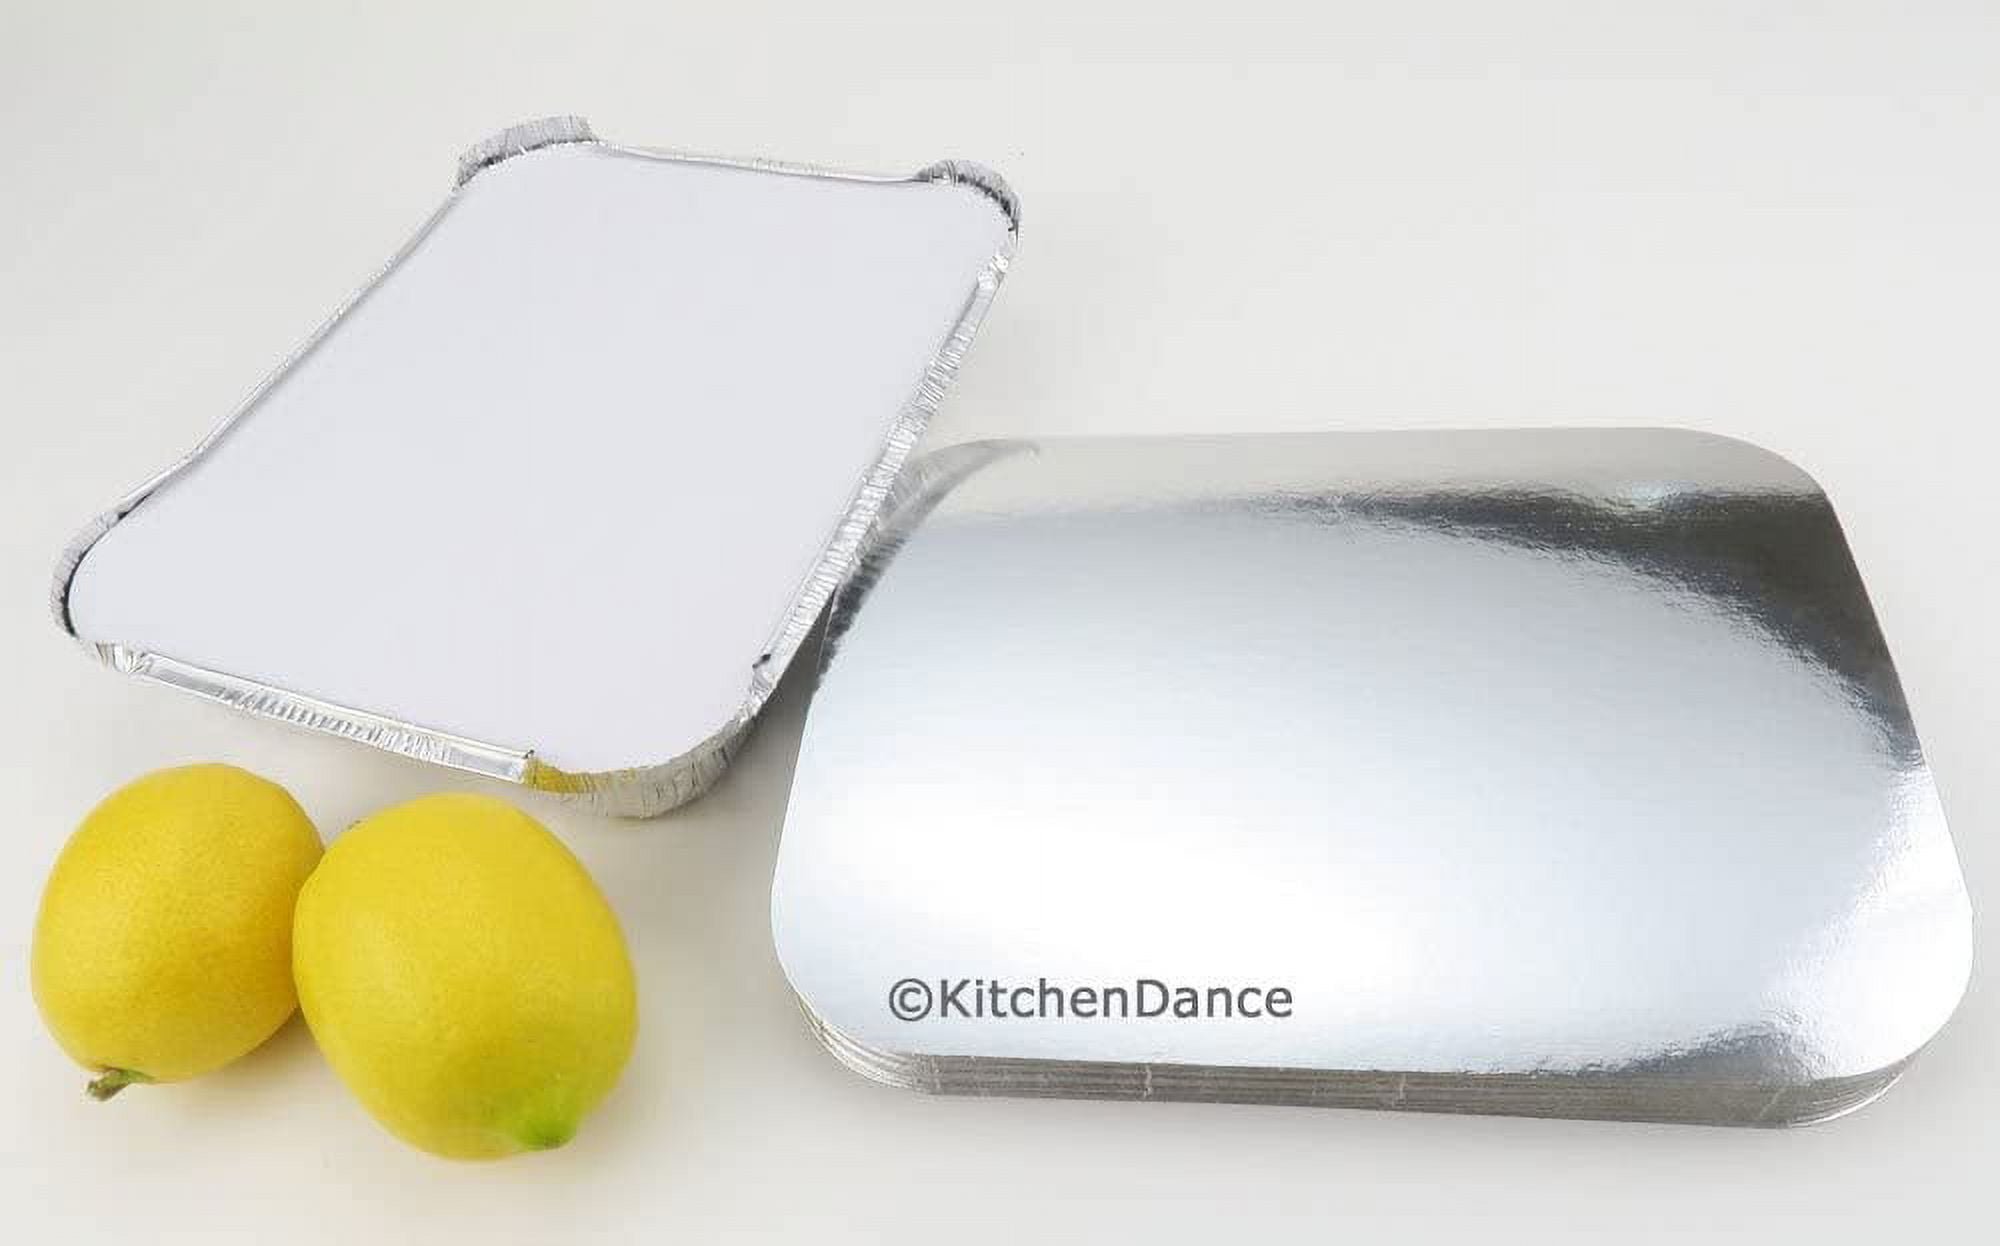 Handi-Foil 5¾ Disposable Aluminum Foil Pot Pie Pan #4007